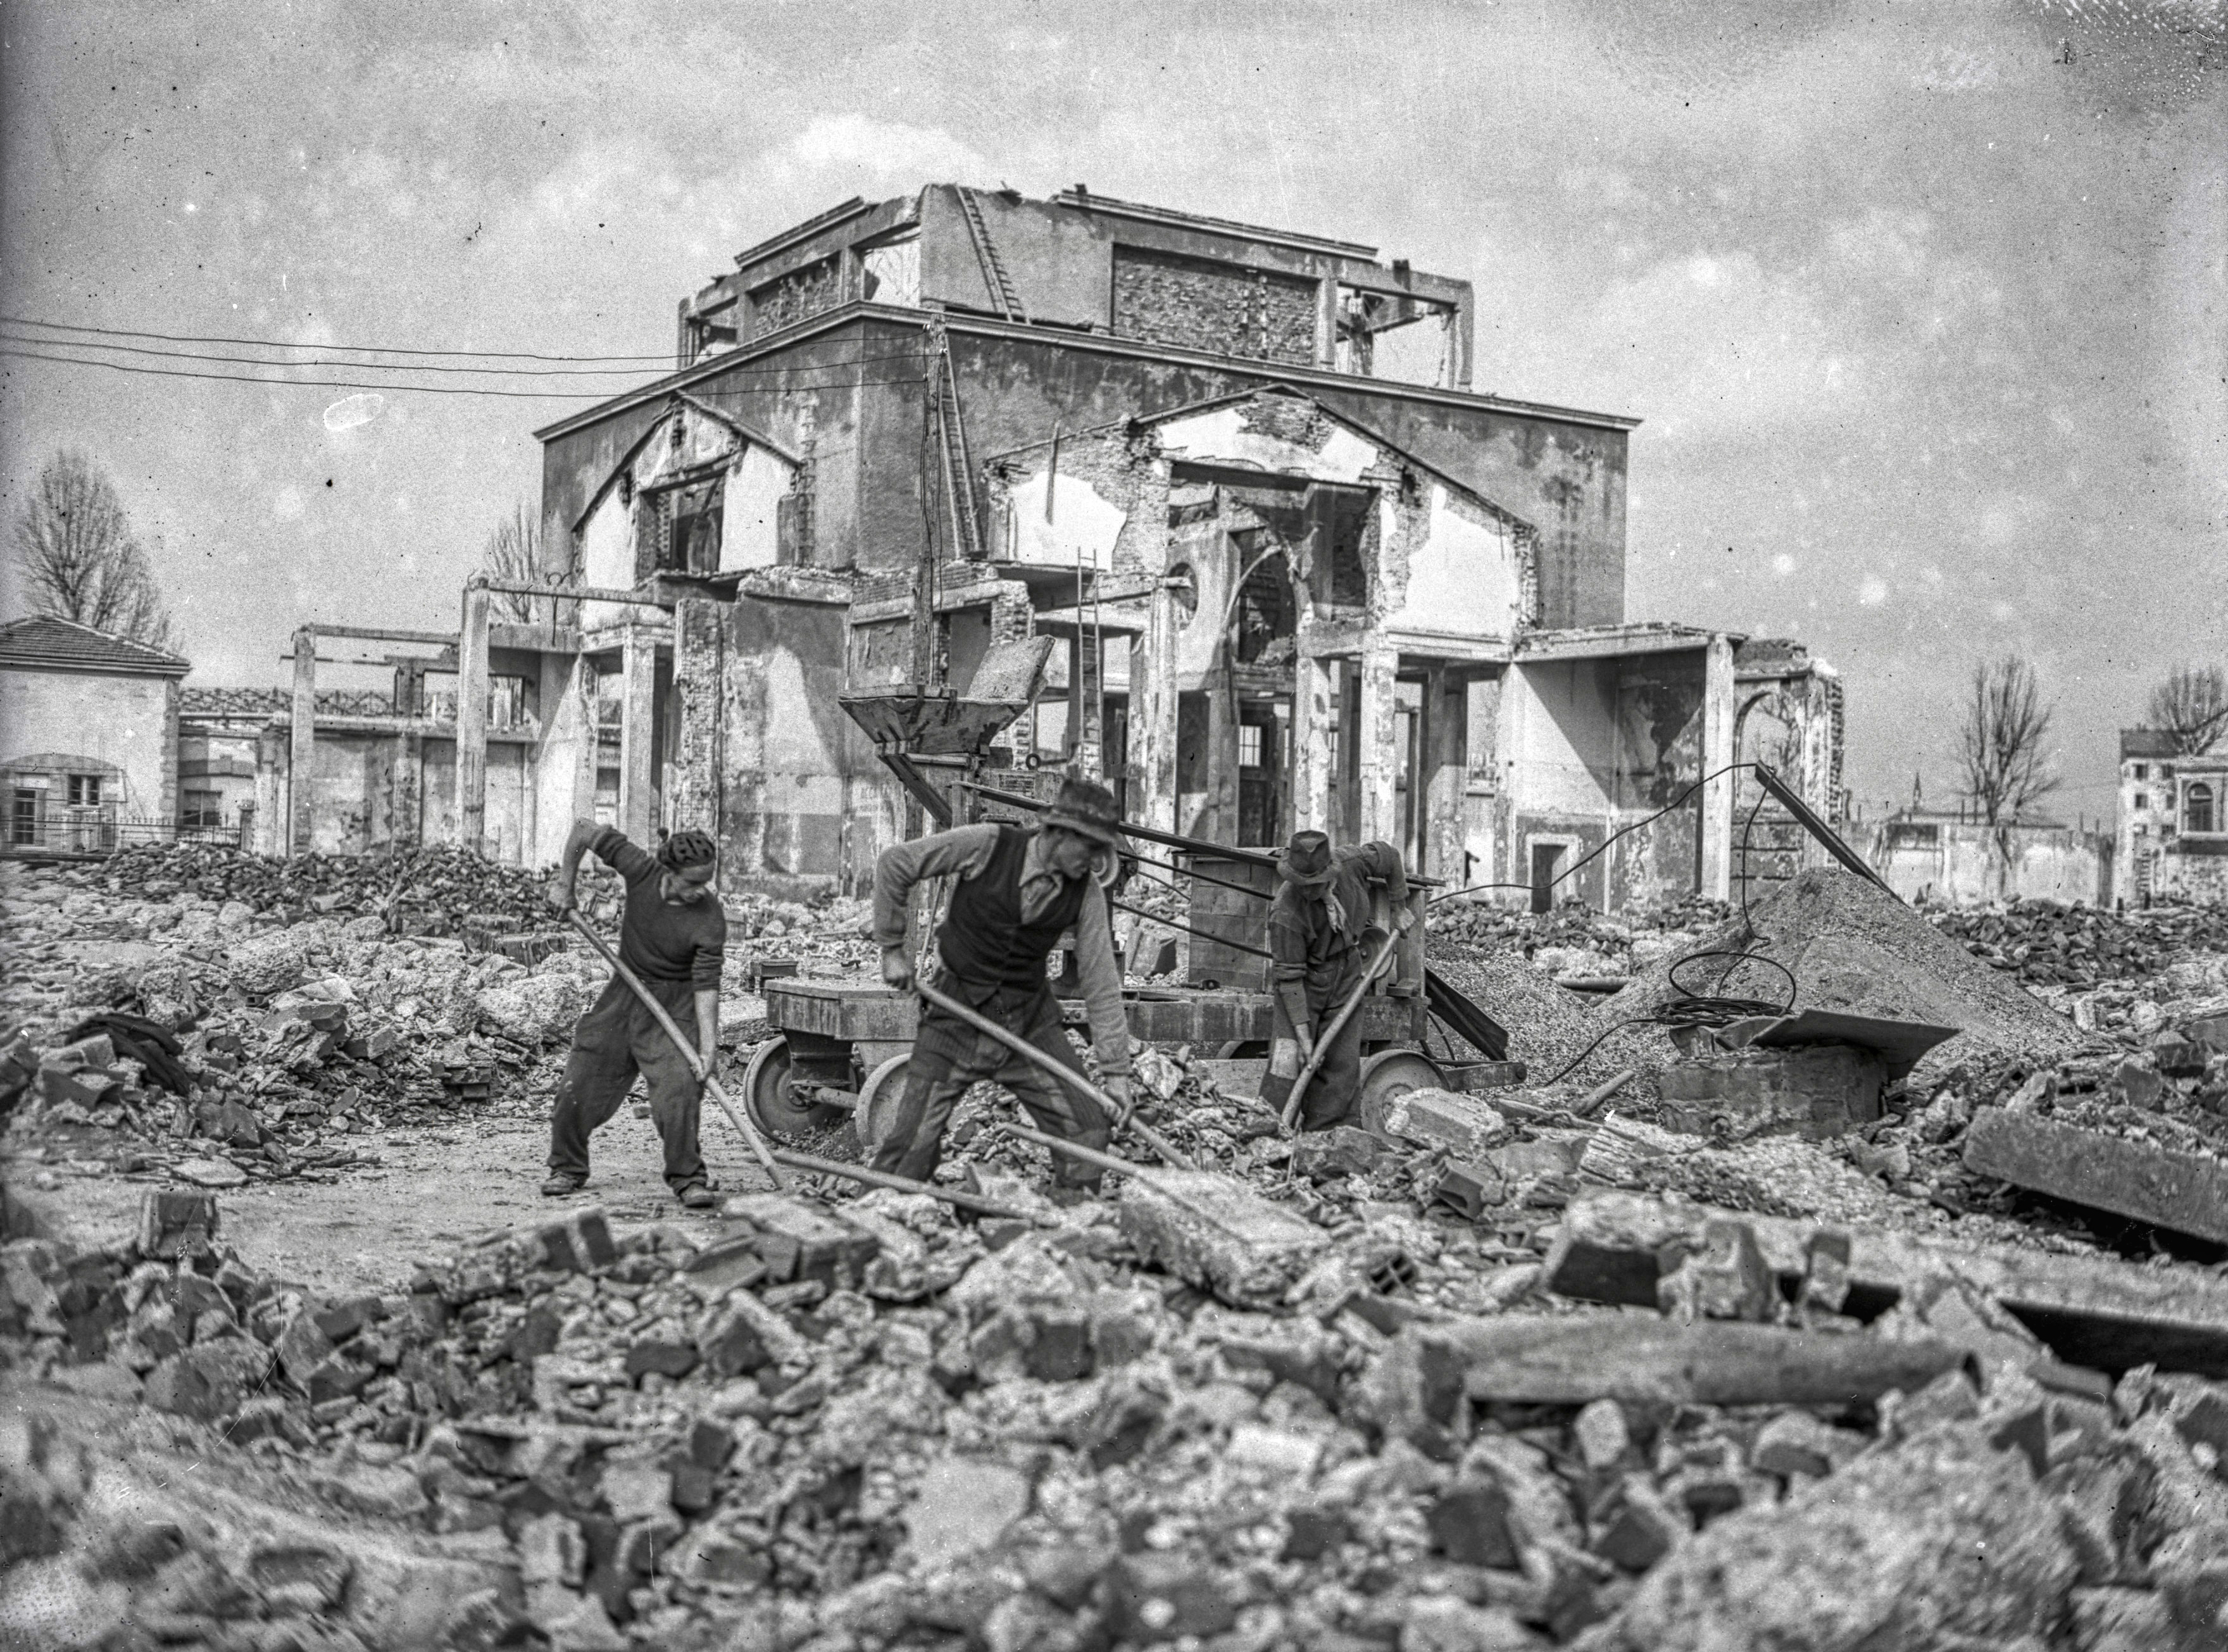 04 - Lavori ricostruzione post-bellica Fiera di Milano 1946